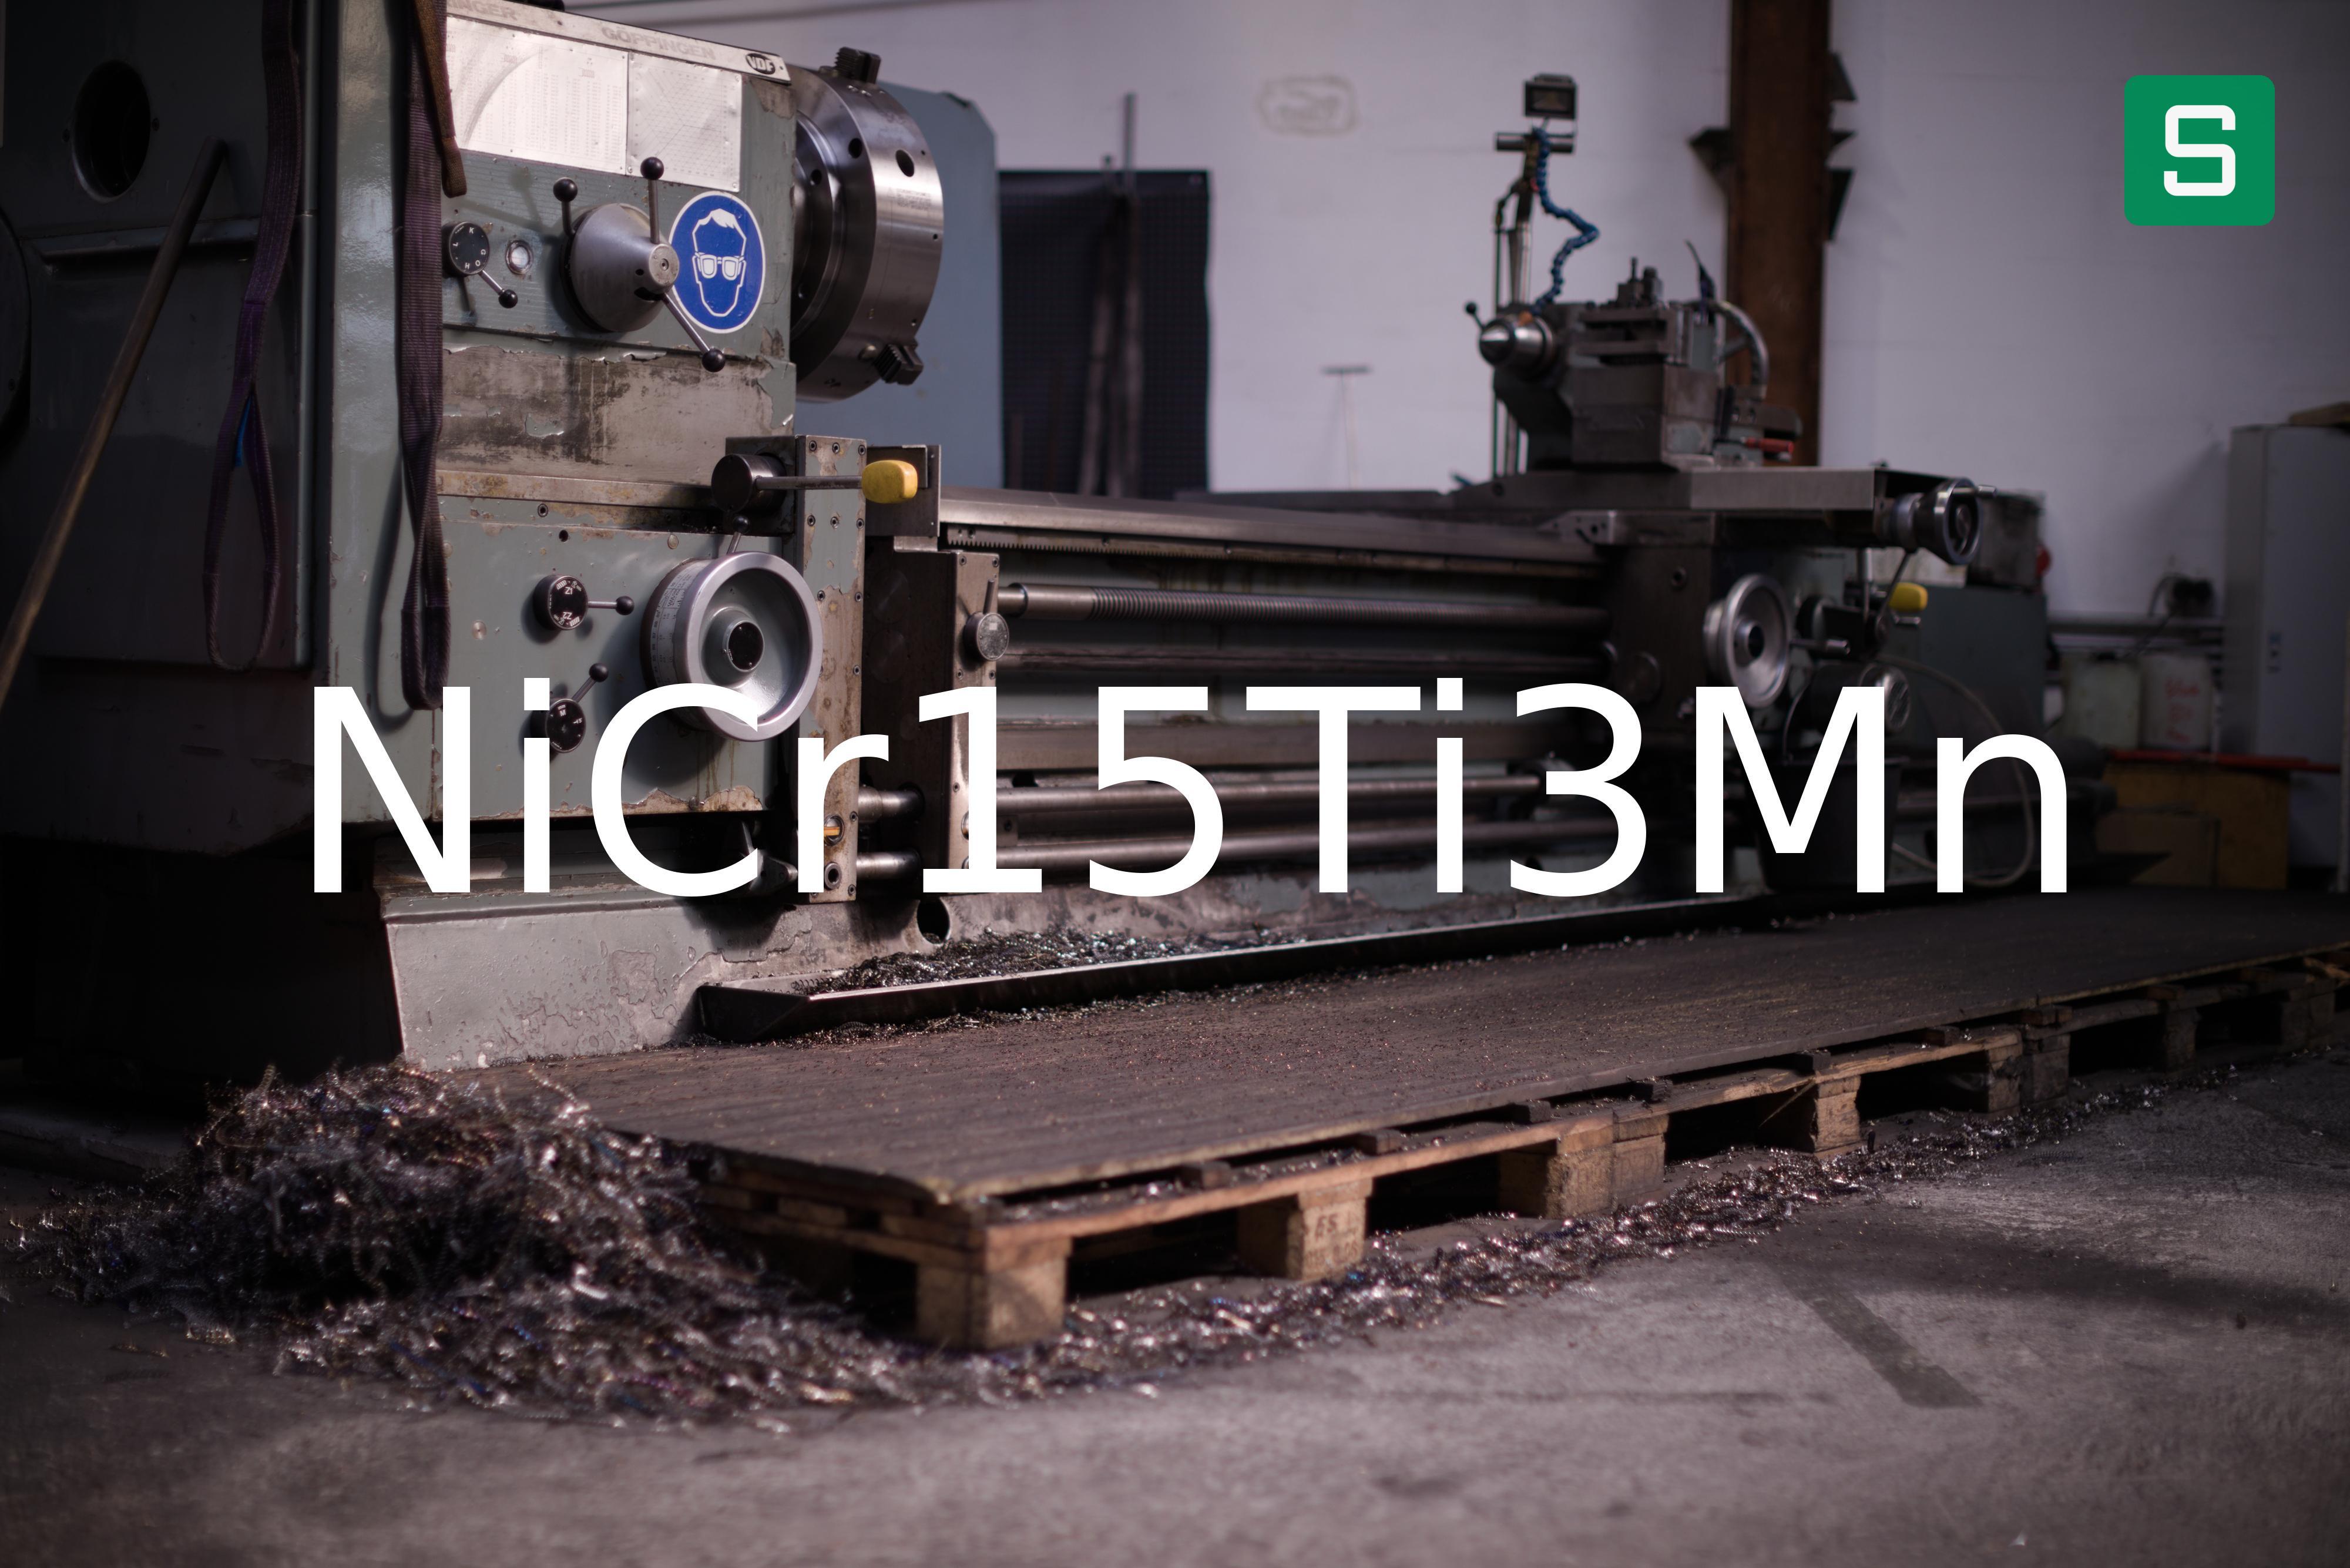 Steel Material: NiCr15Ti3Mn